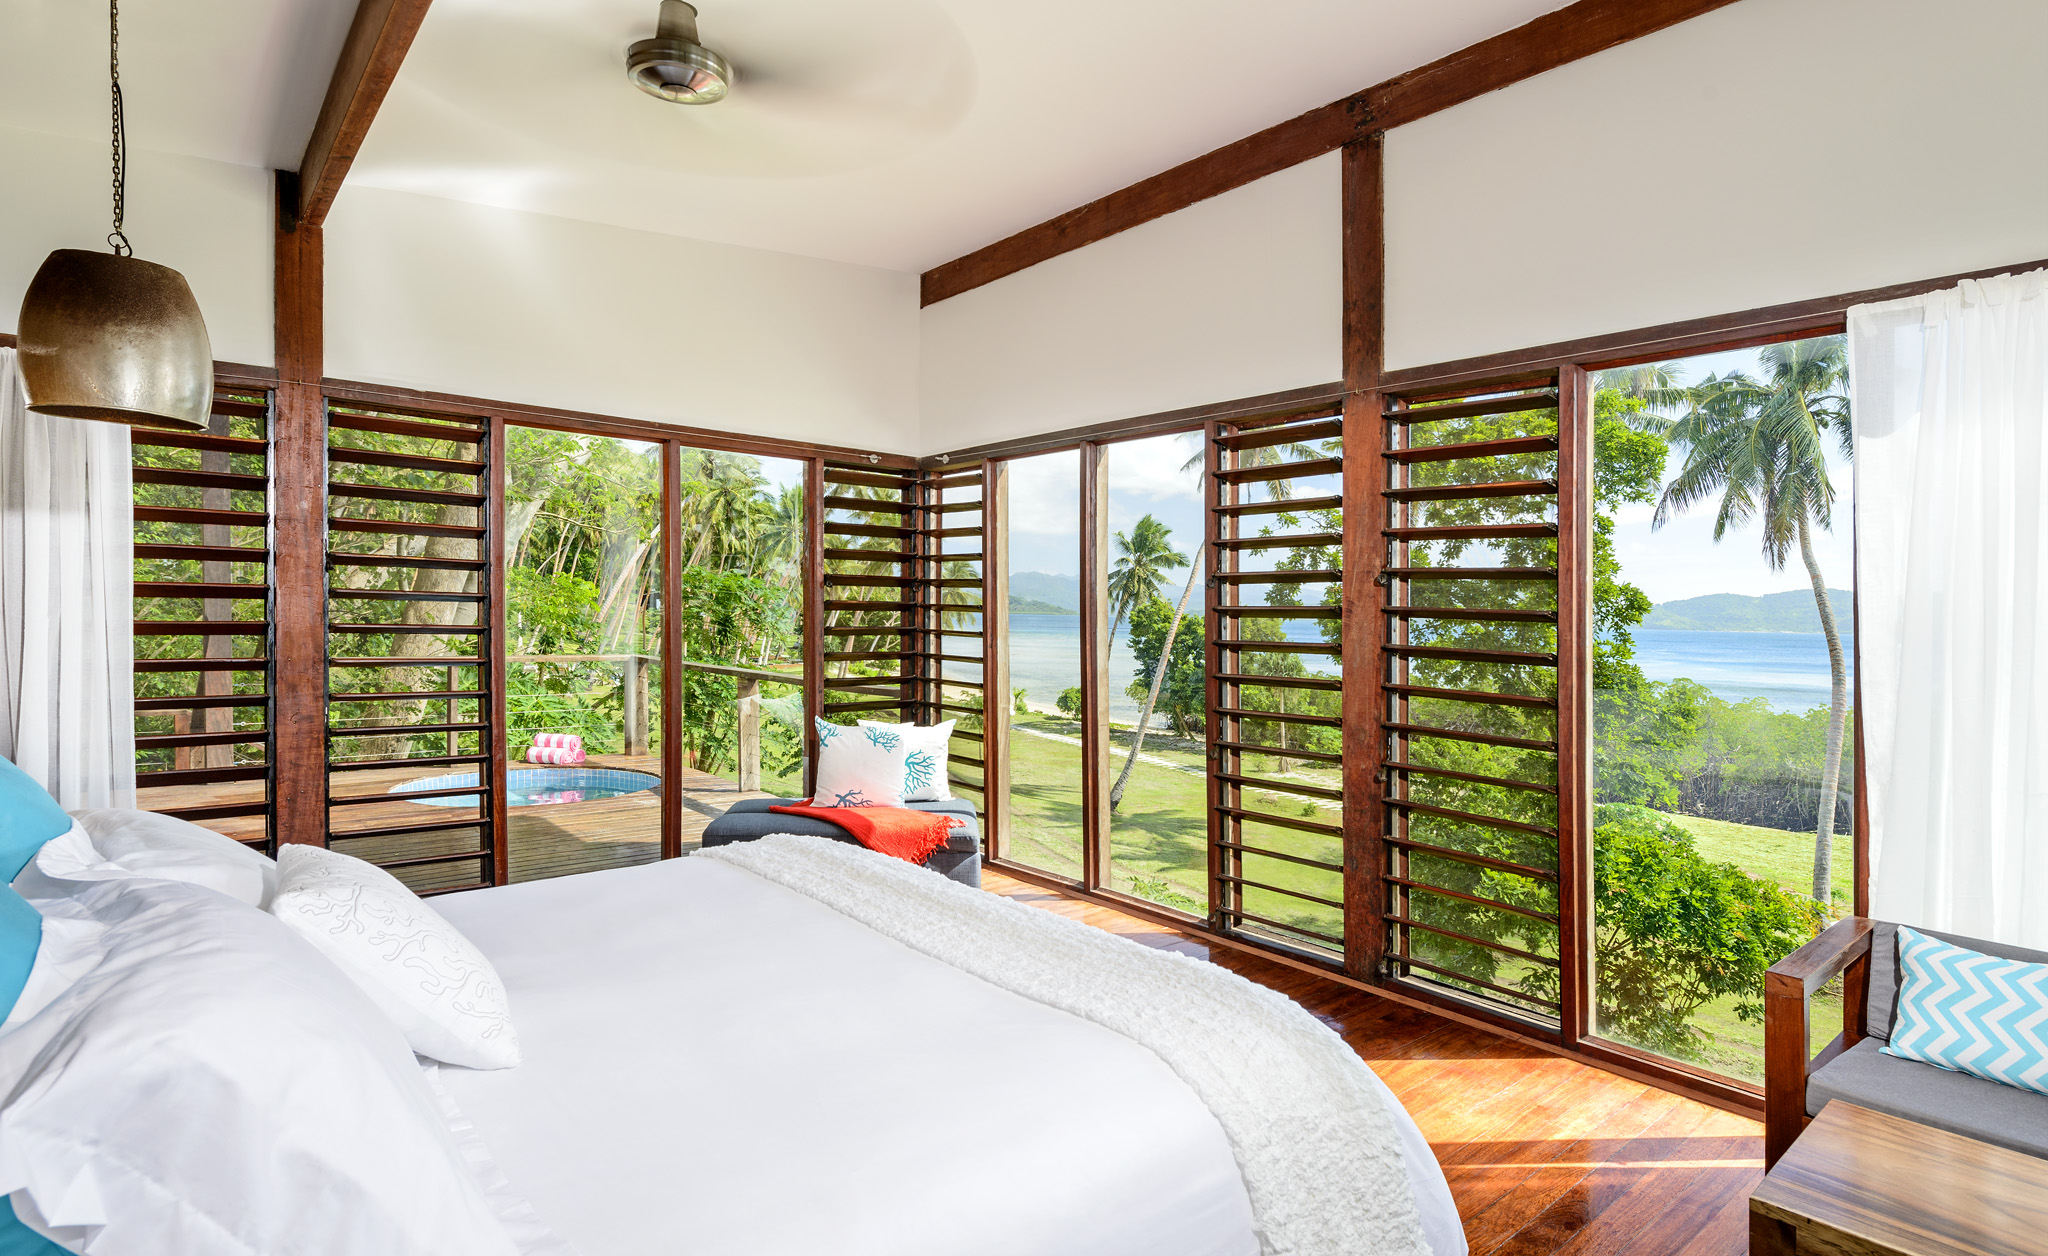 Oceanfront Villa bedroom views, The Remote Resort Fiji Islands